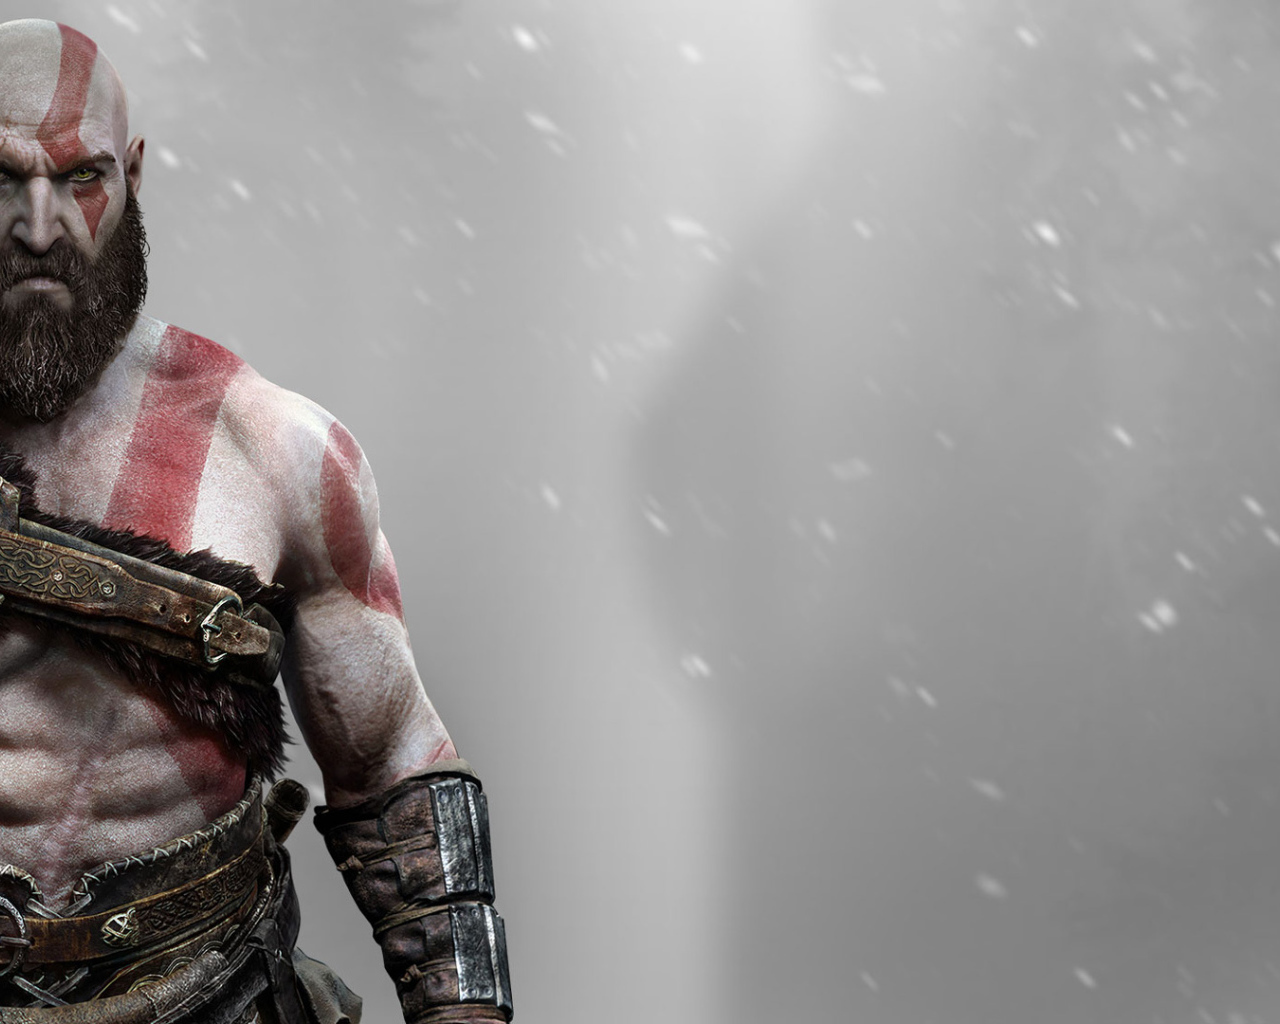 Kratos главный герой игры God of War 